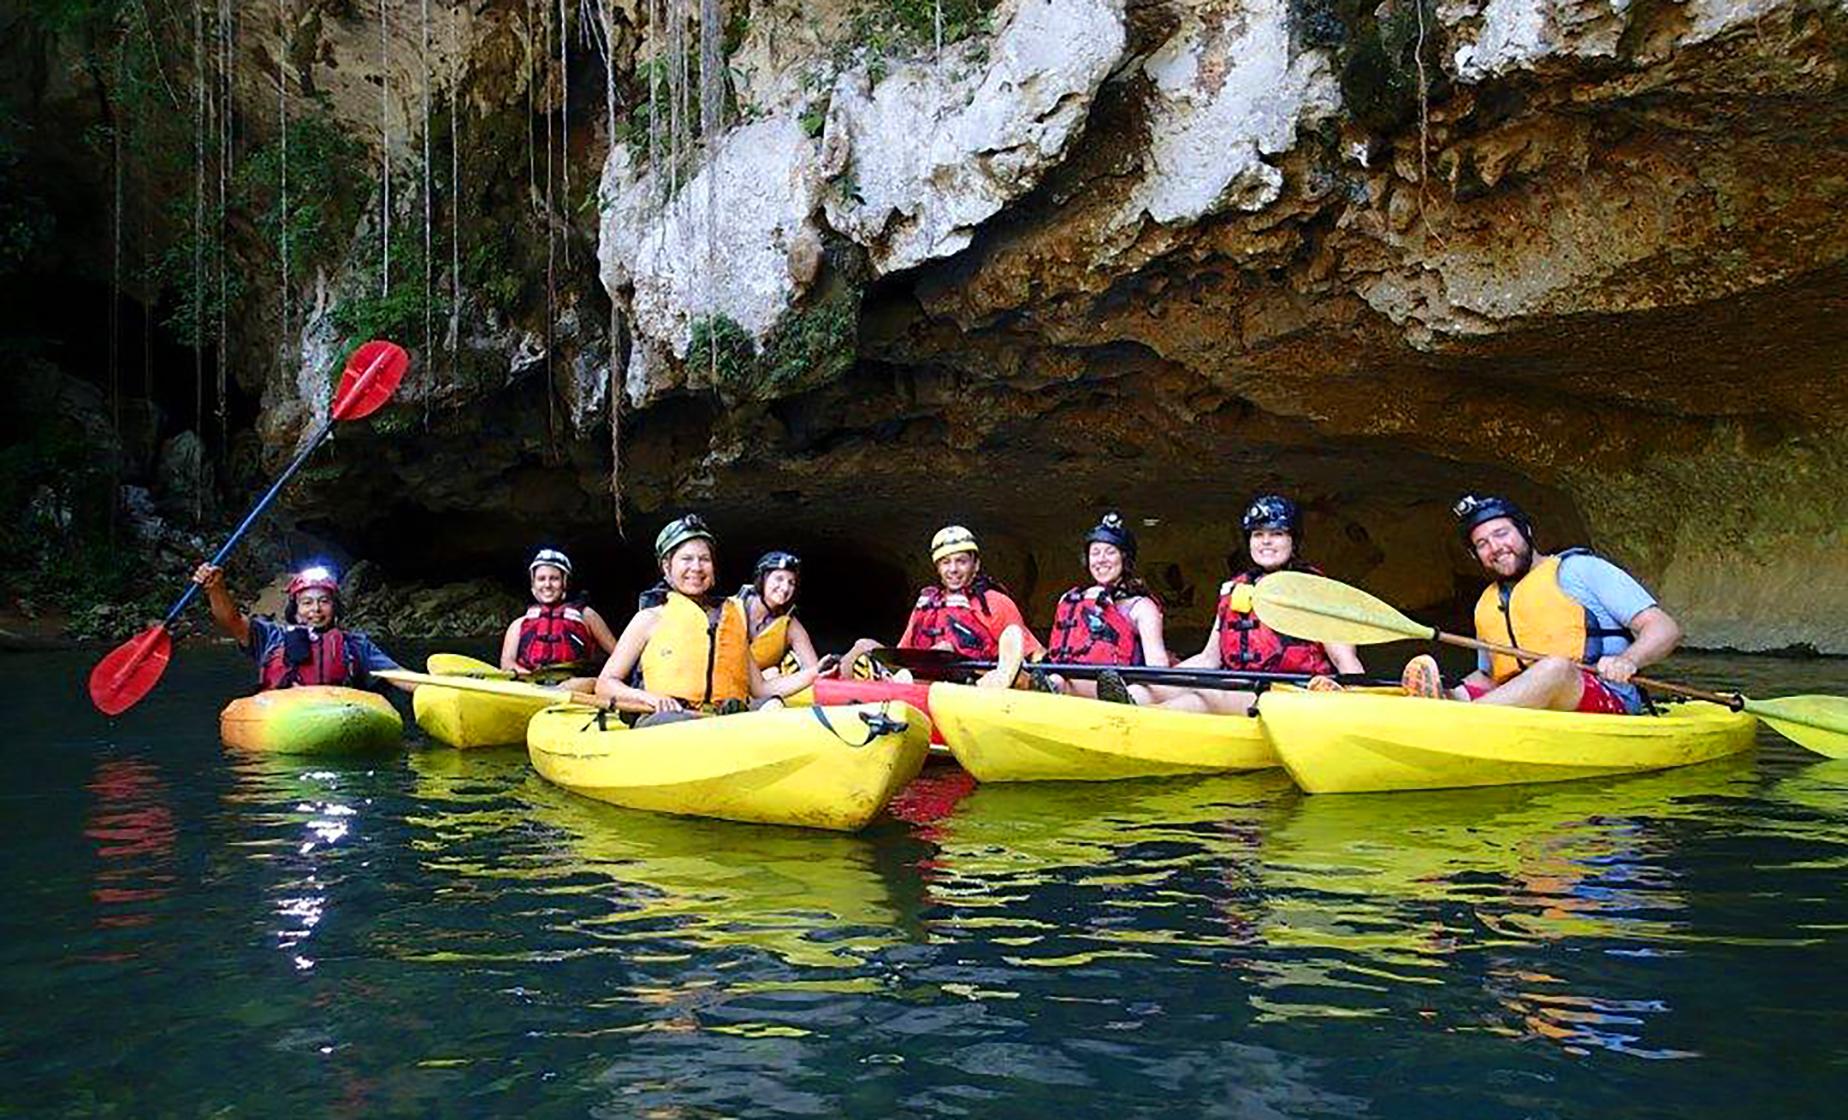 belize kayaking excursions